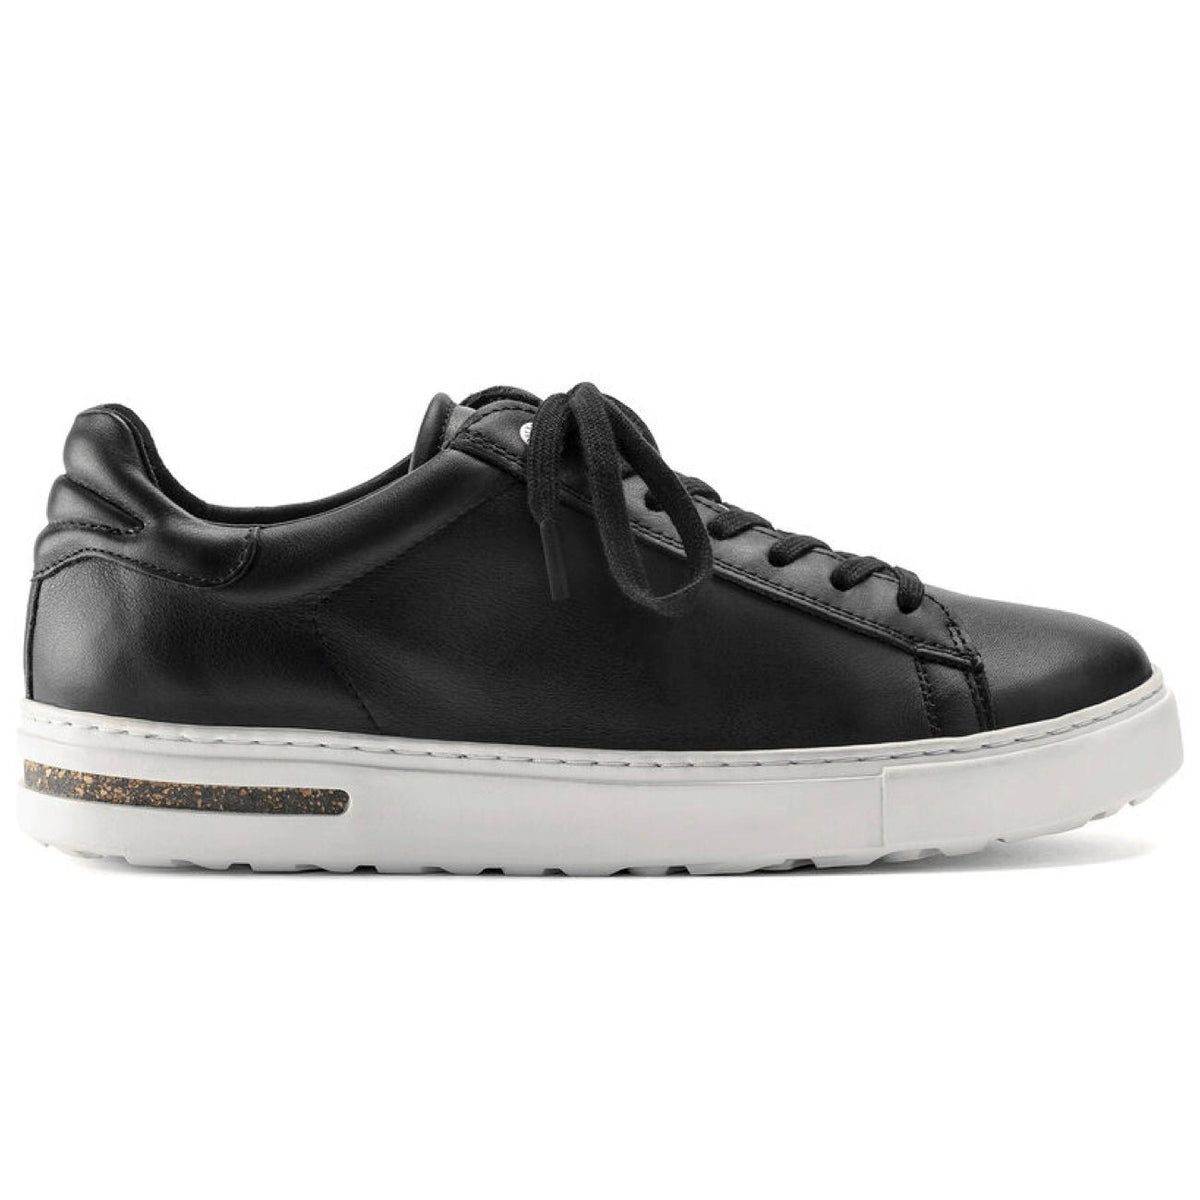 Birkenstock Shoes, Bend,Natural Leather, Regular Fit, Black Shoes Birkenstock 